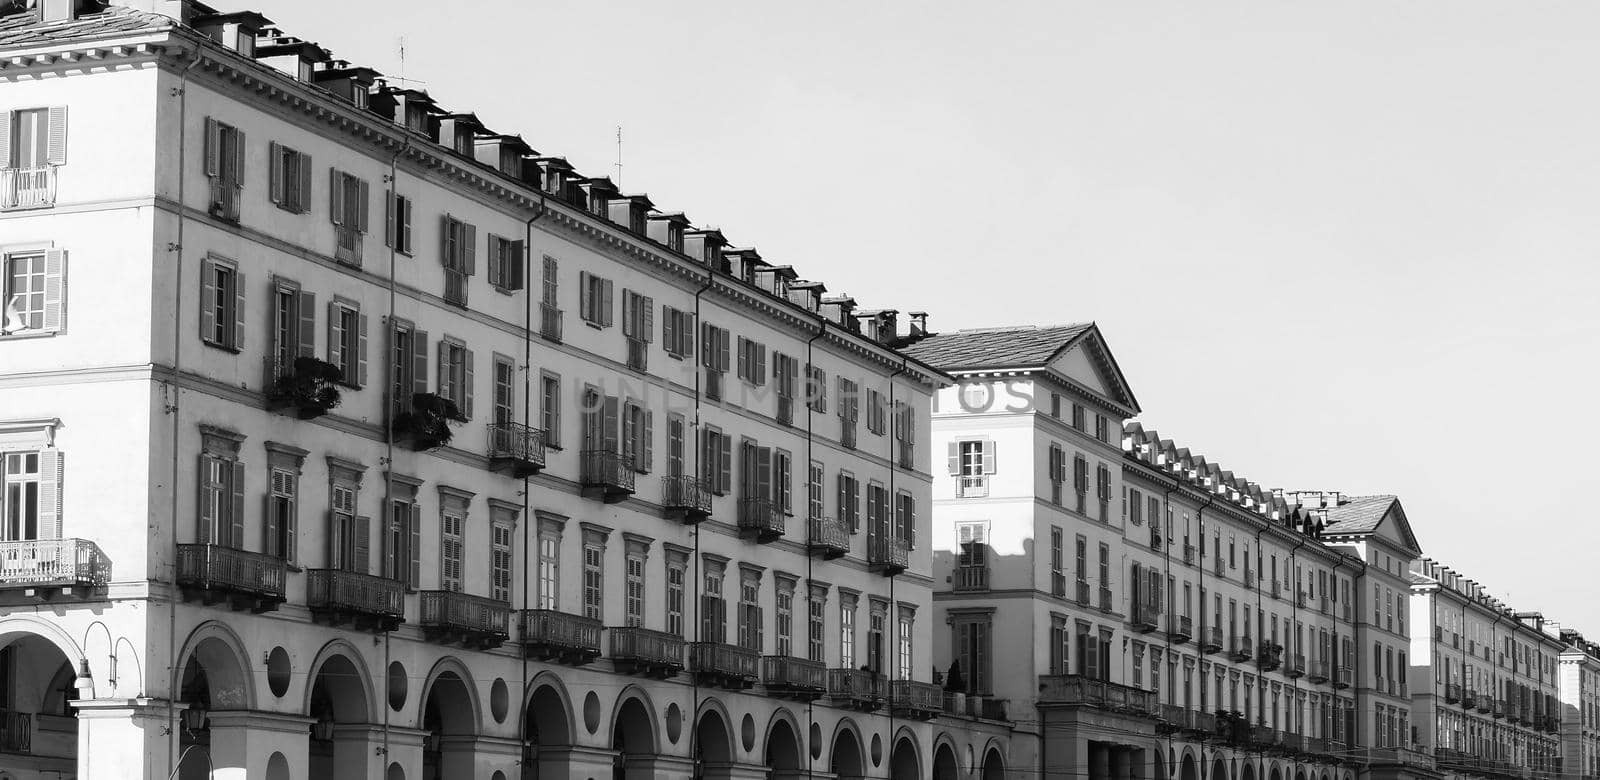 Piazza Vittorio square in Turin in black and white by claudiodivizia